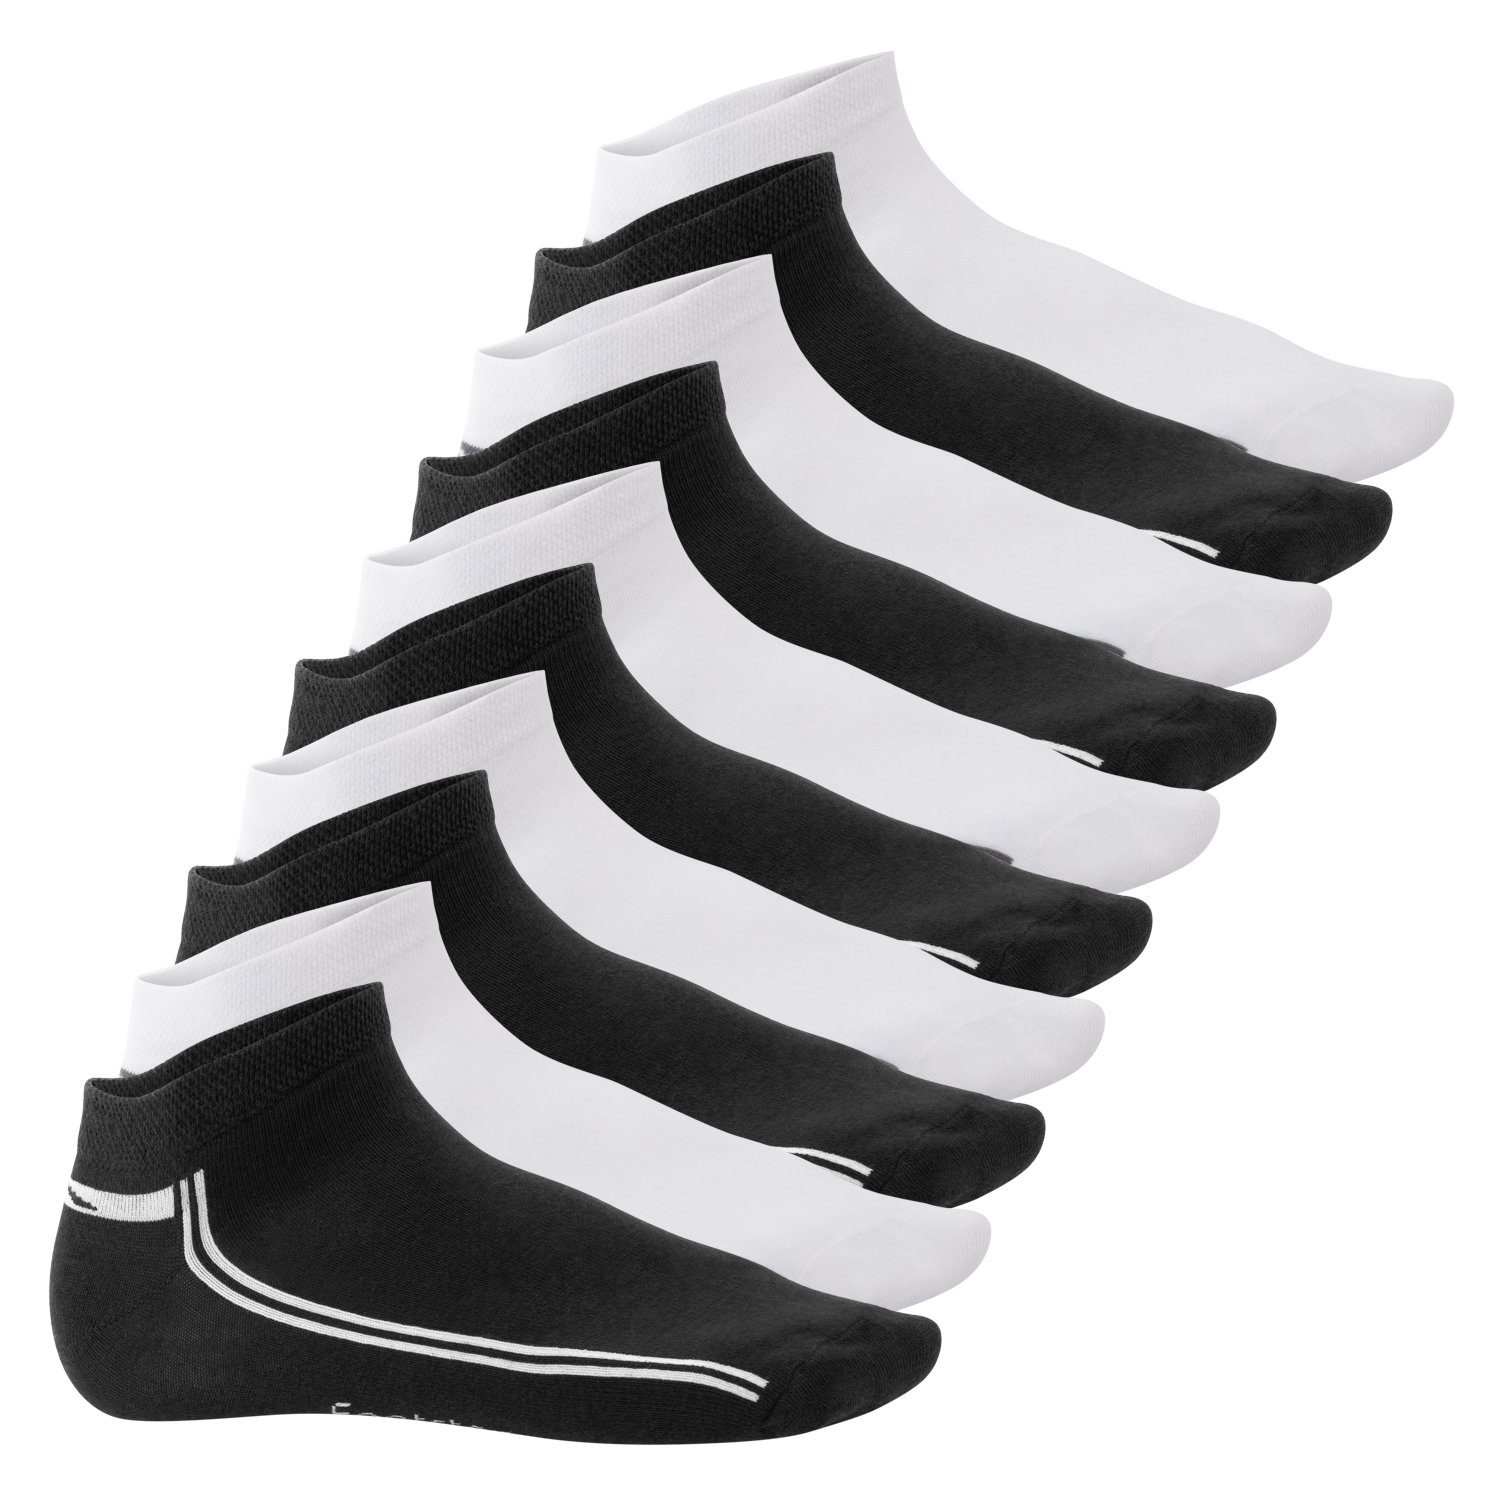 Footstar Füßlinge Sneak It! Damen & Herren Motiv Sneaker Socken (10 Paar) Schwarz-Weiß